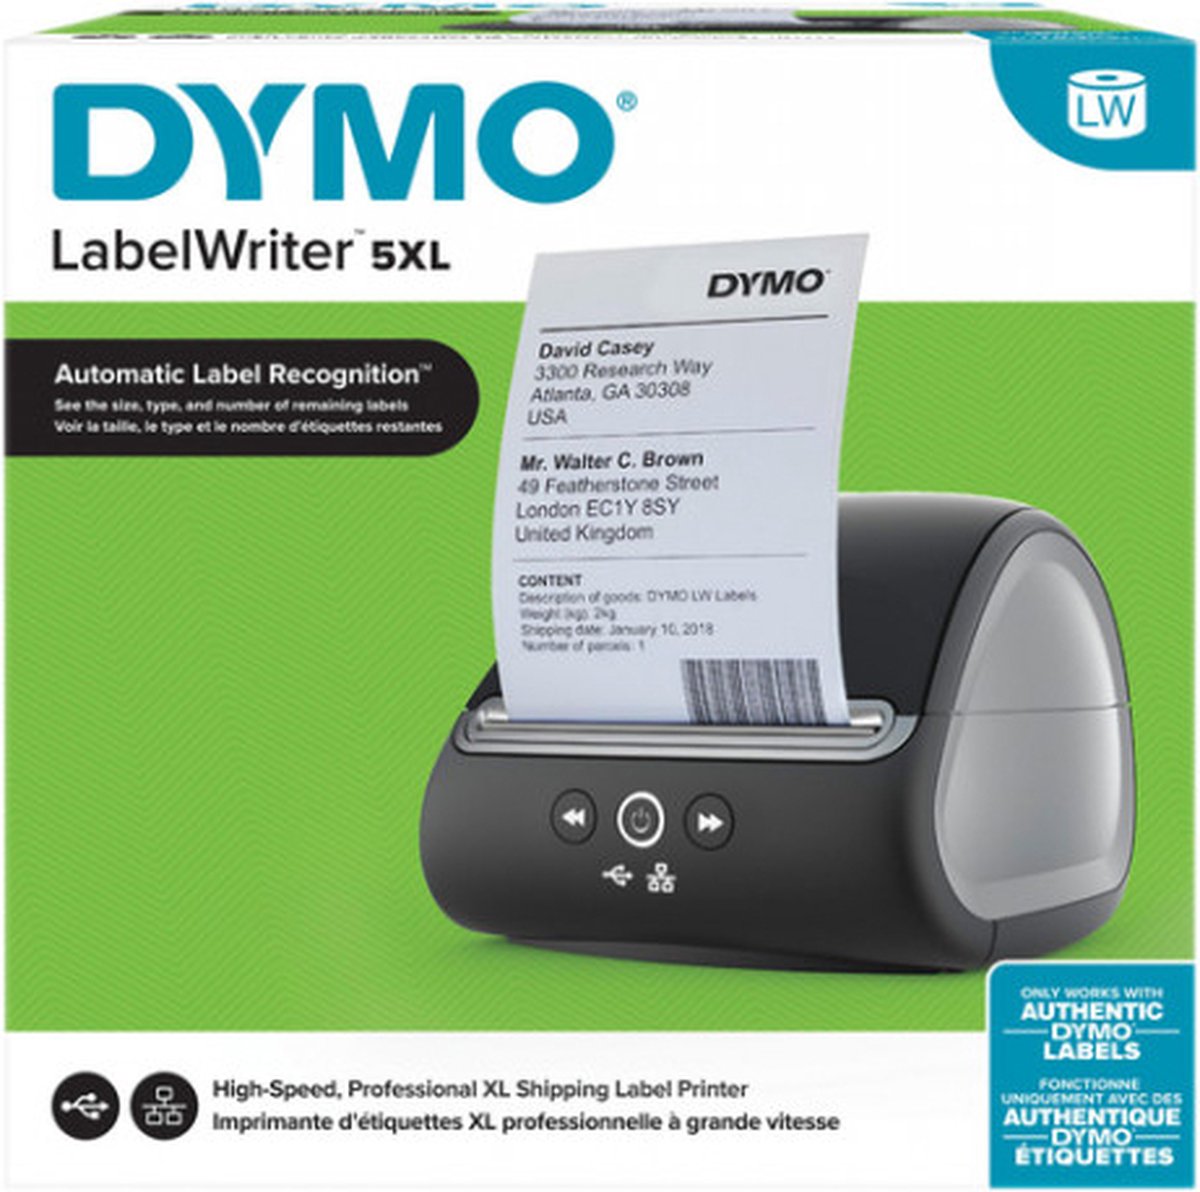 Imprimante d'étiquettes Dymo LabelWriter 550 - Noir pas cher